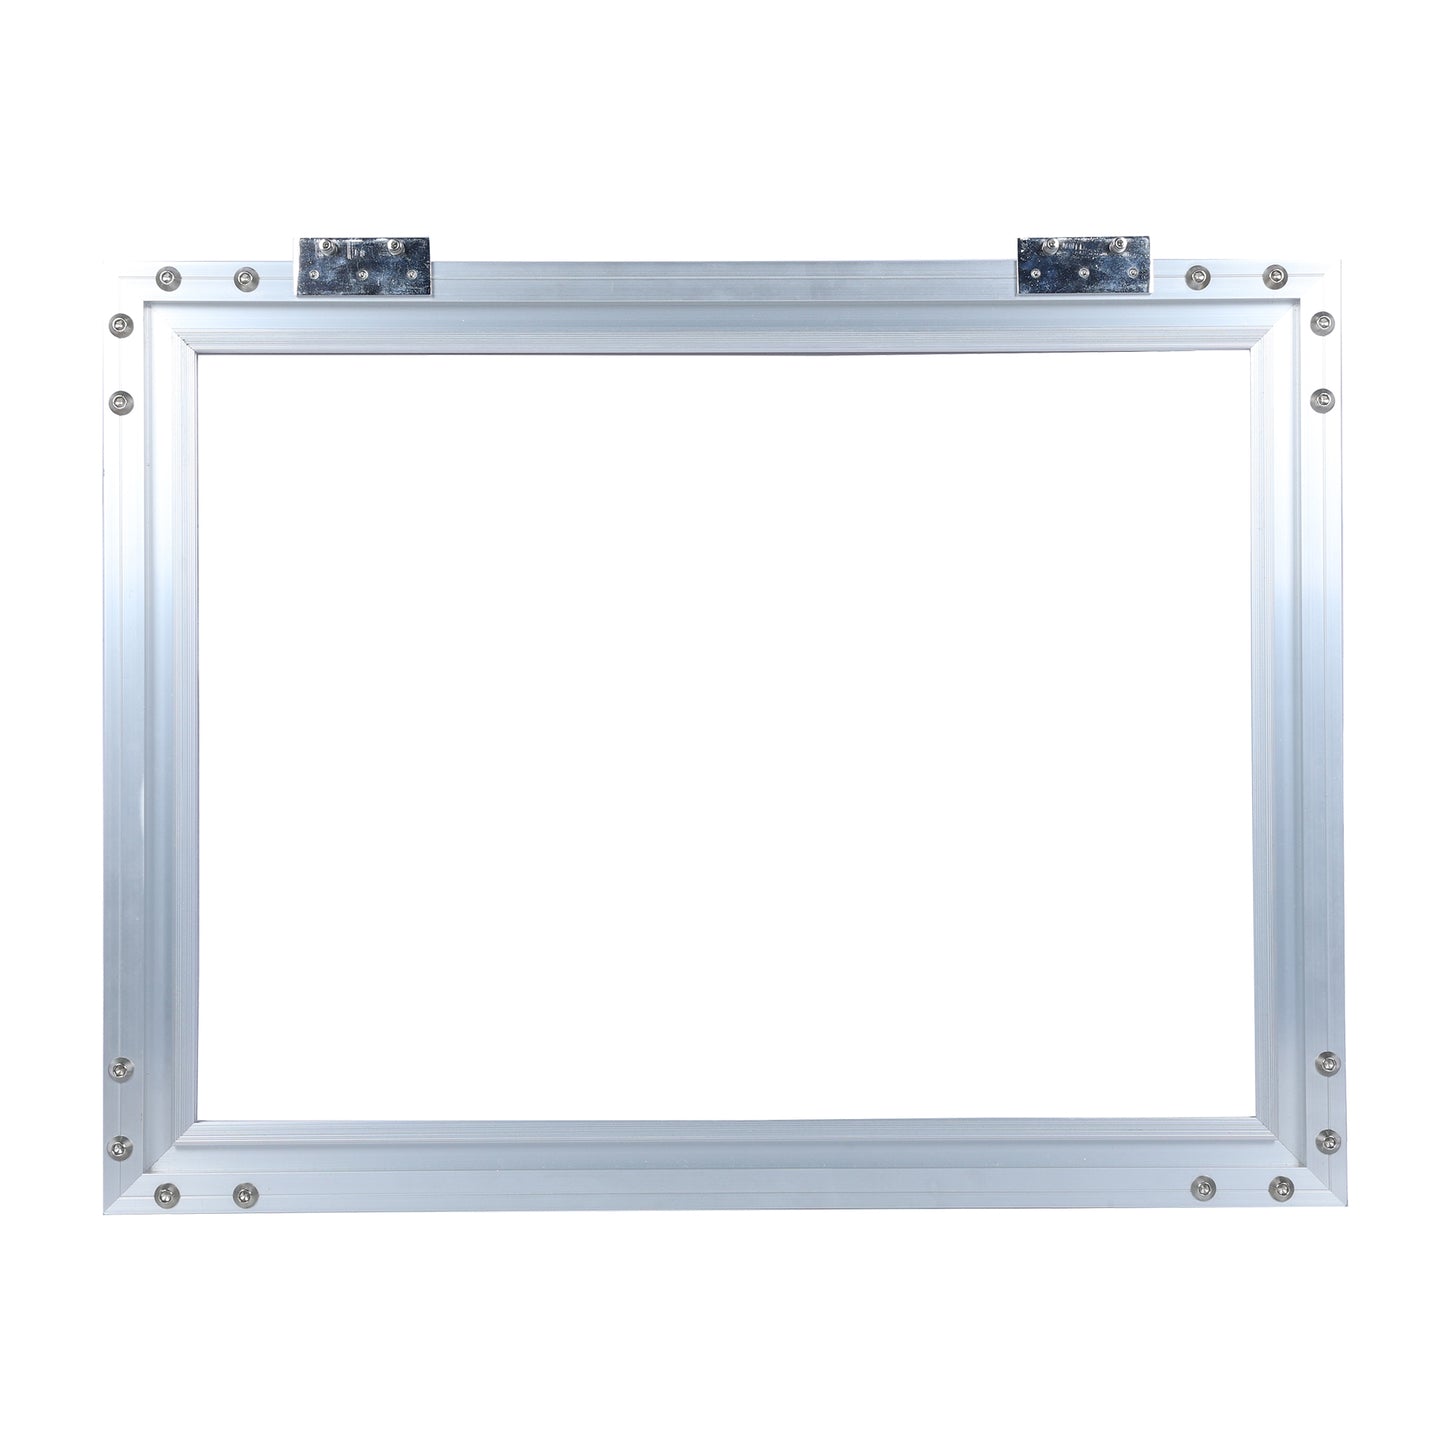 S-1501 Aluminum frame